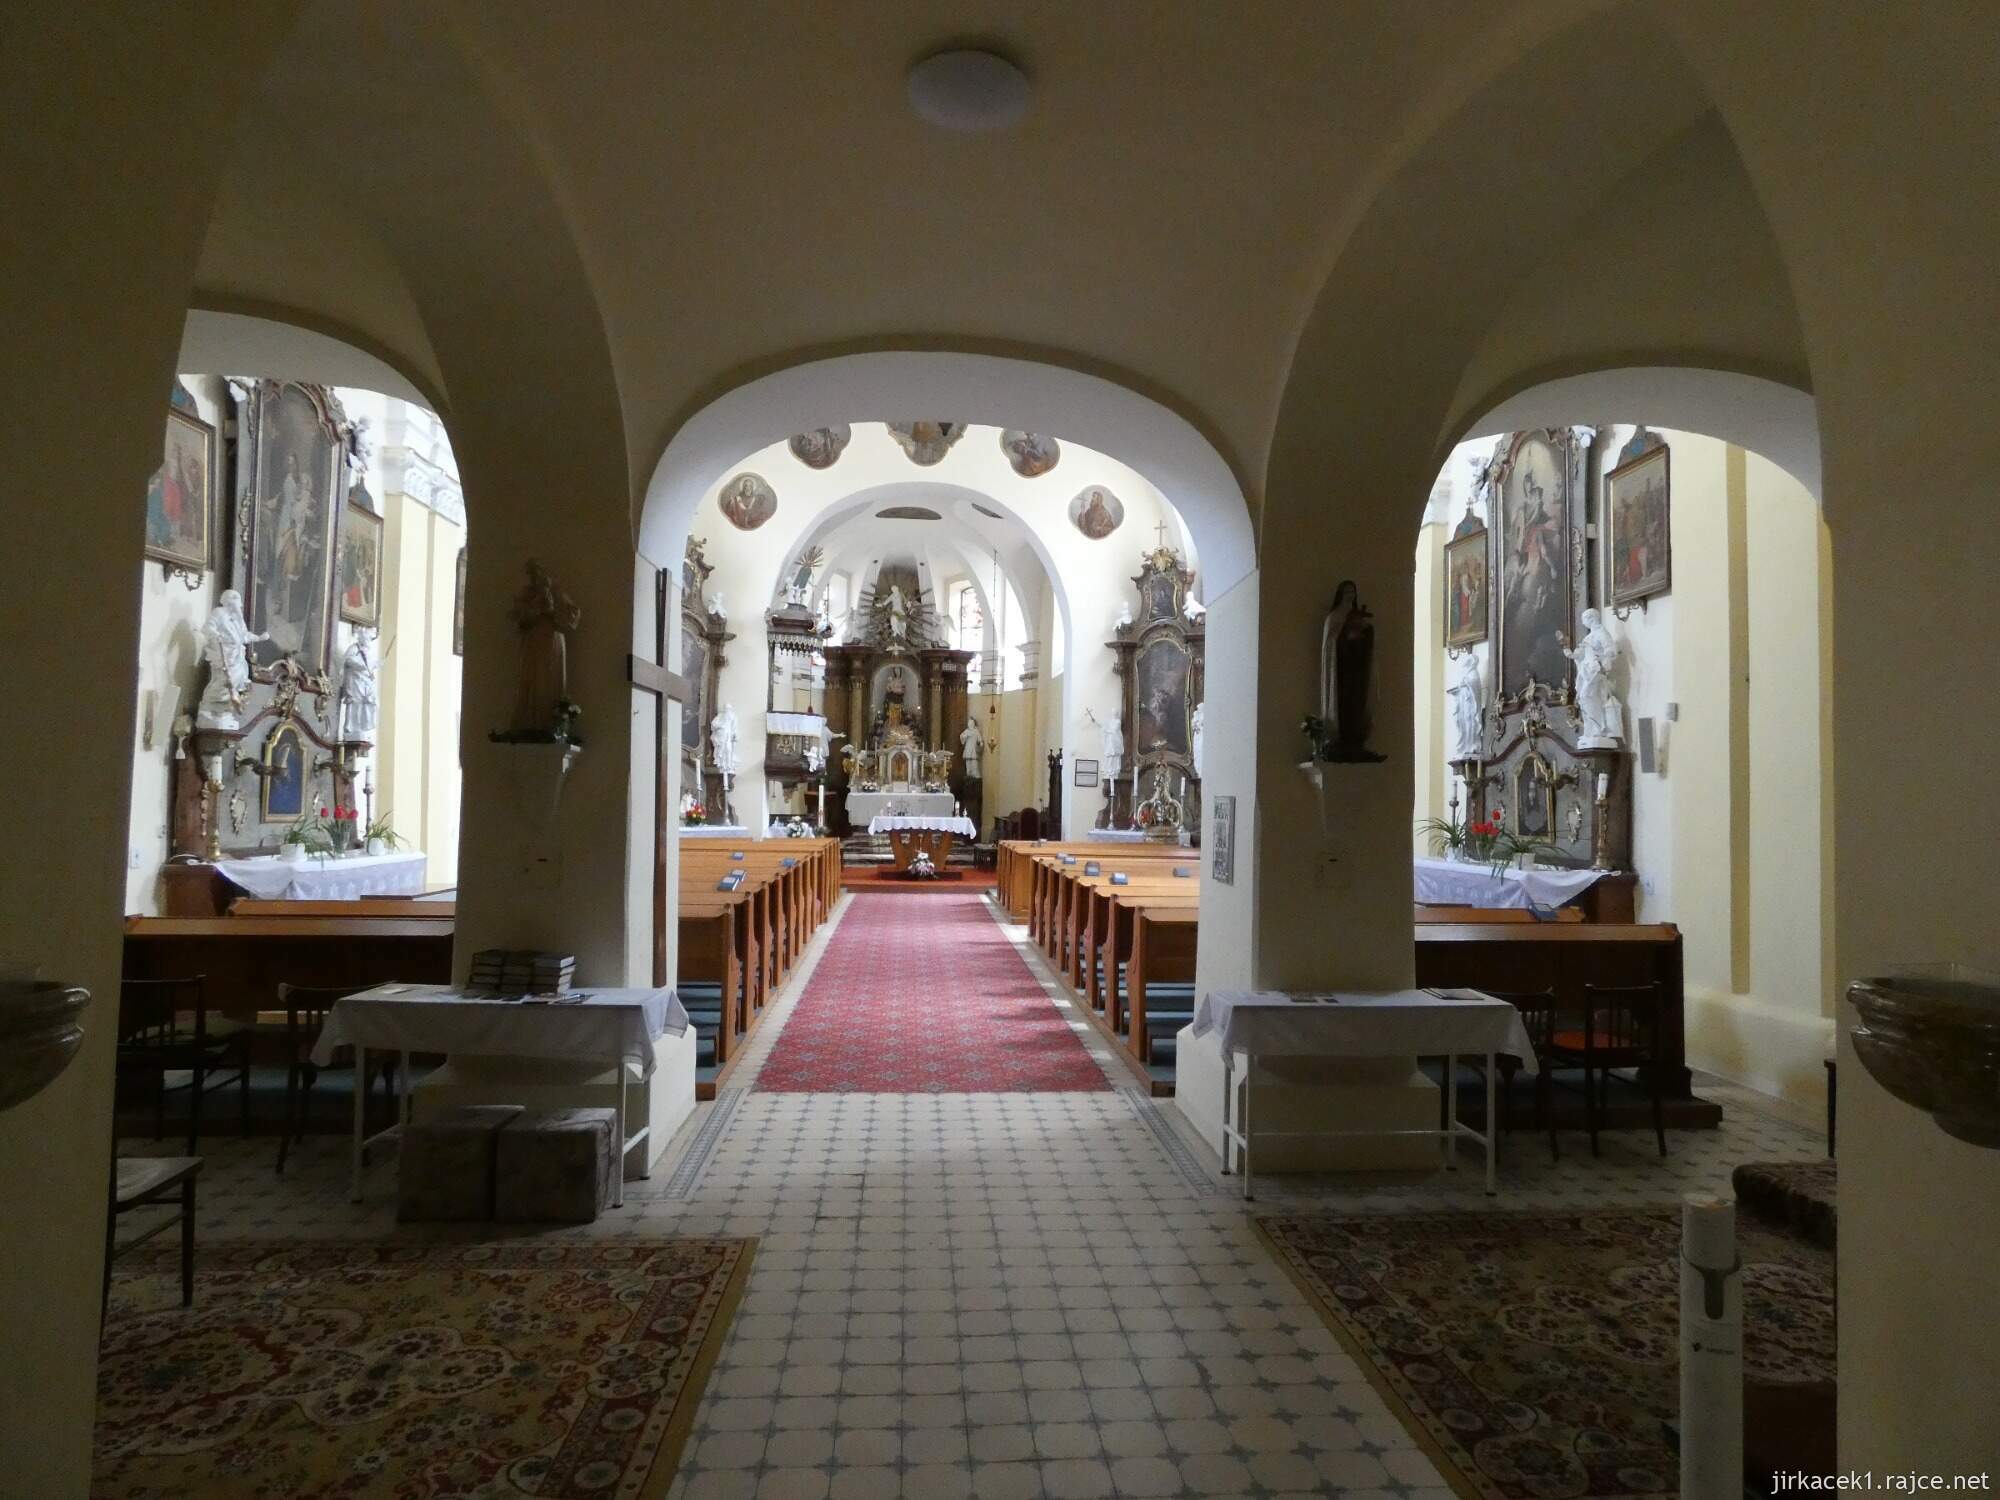 F - Koryčany - kostel sv. Vavřince 028 - interiér